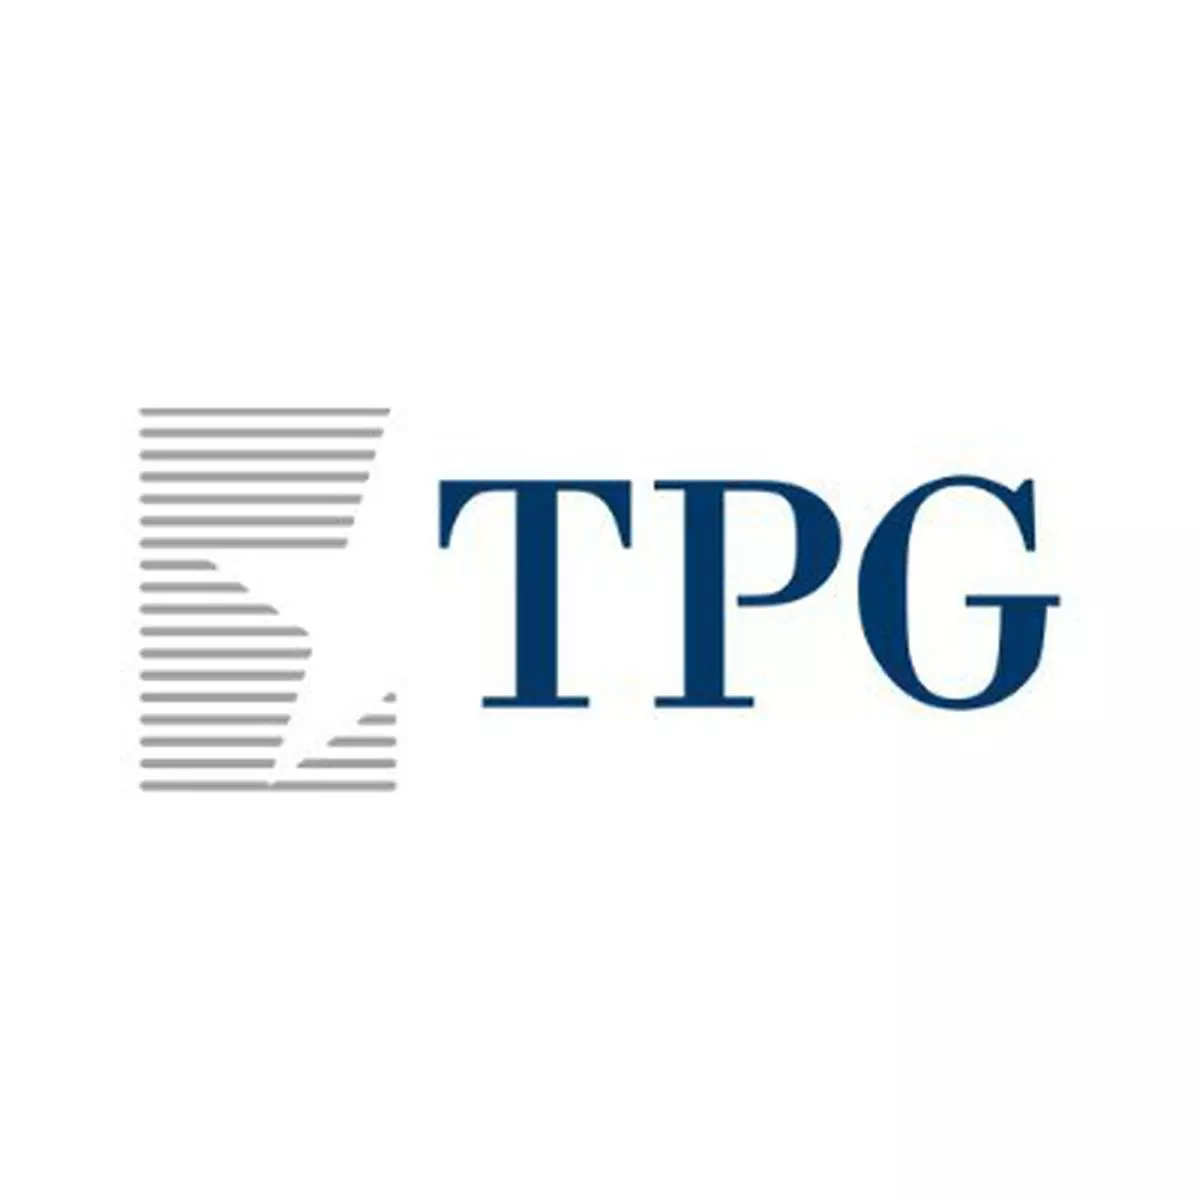 TPG Capital’s logo